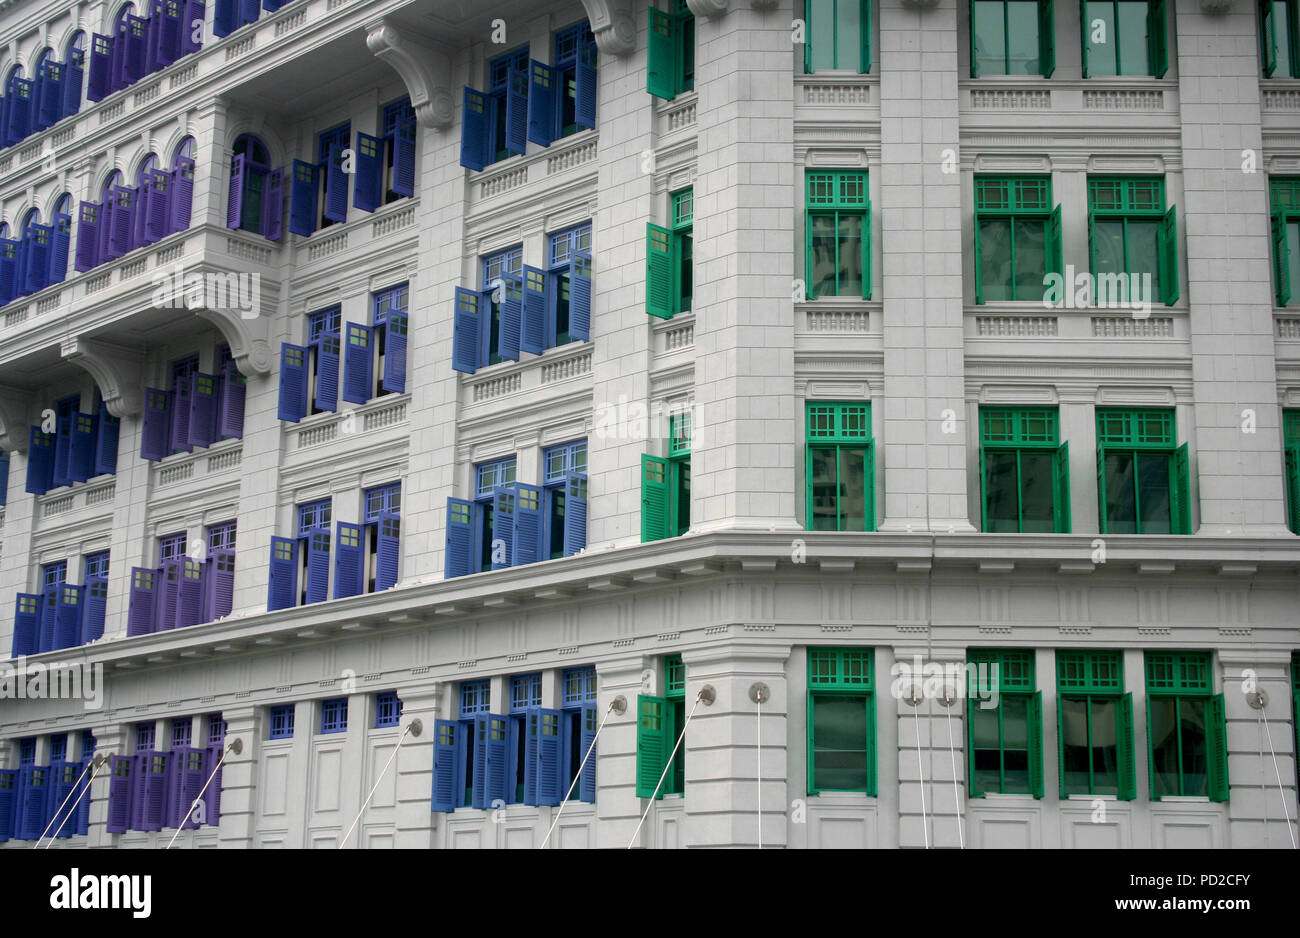 White bâtiment colonial avec configuration des volets colorés en violet, bleu et vert, Singapour Banque D'Images